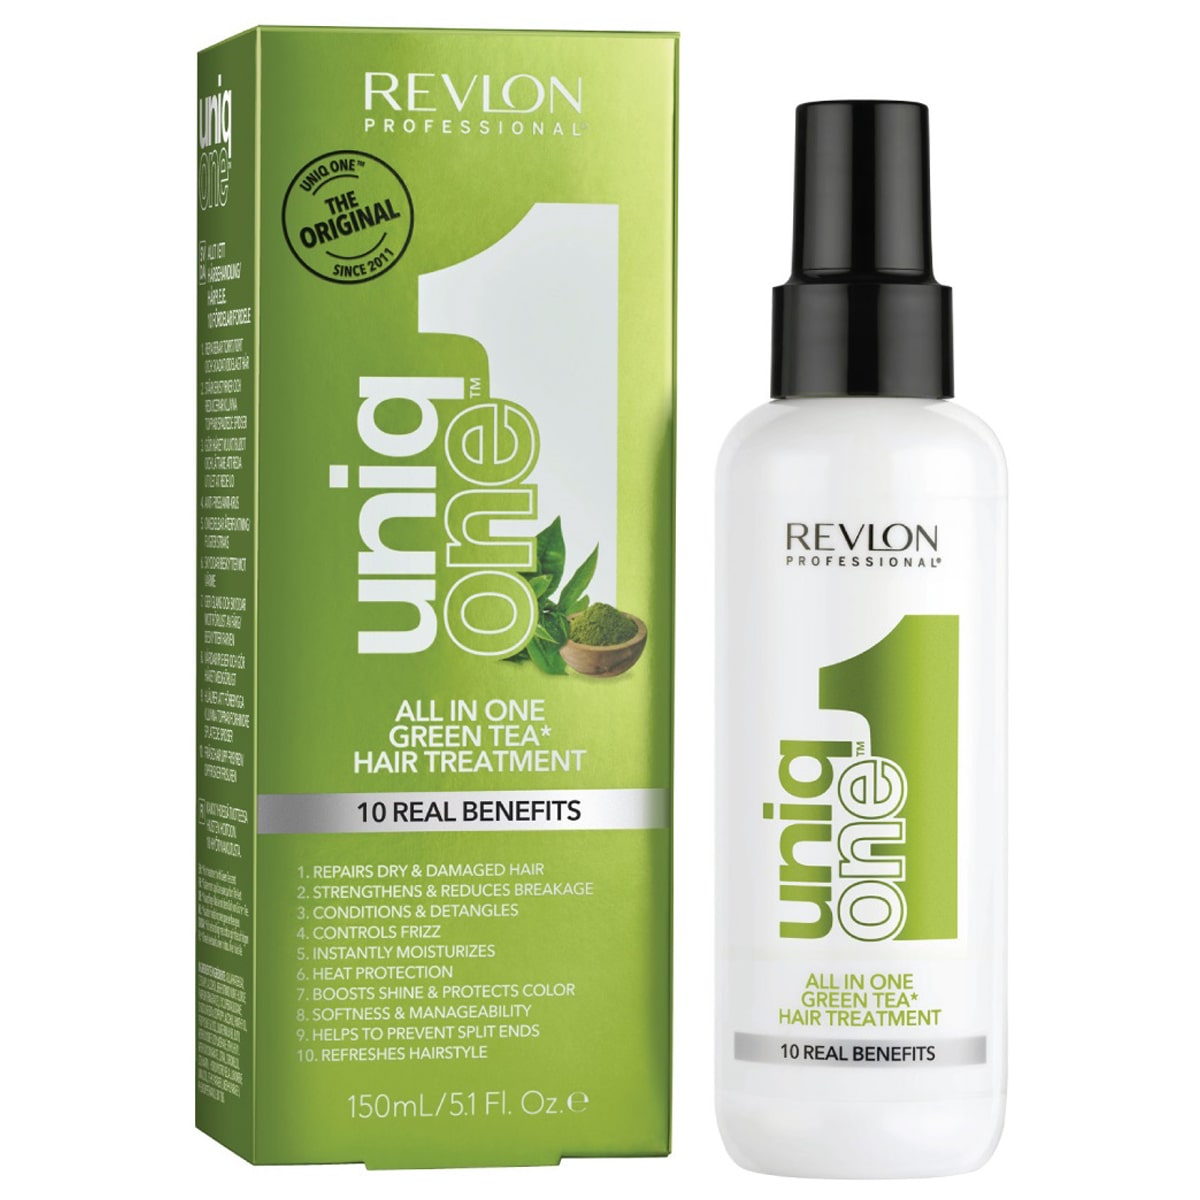 Revlon Professional Универсальная спрей-маска с ароматом зеленого чая, 150 мл (Revlon Professional, Uniqone)